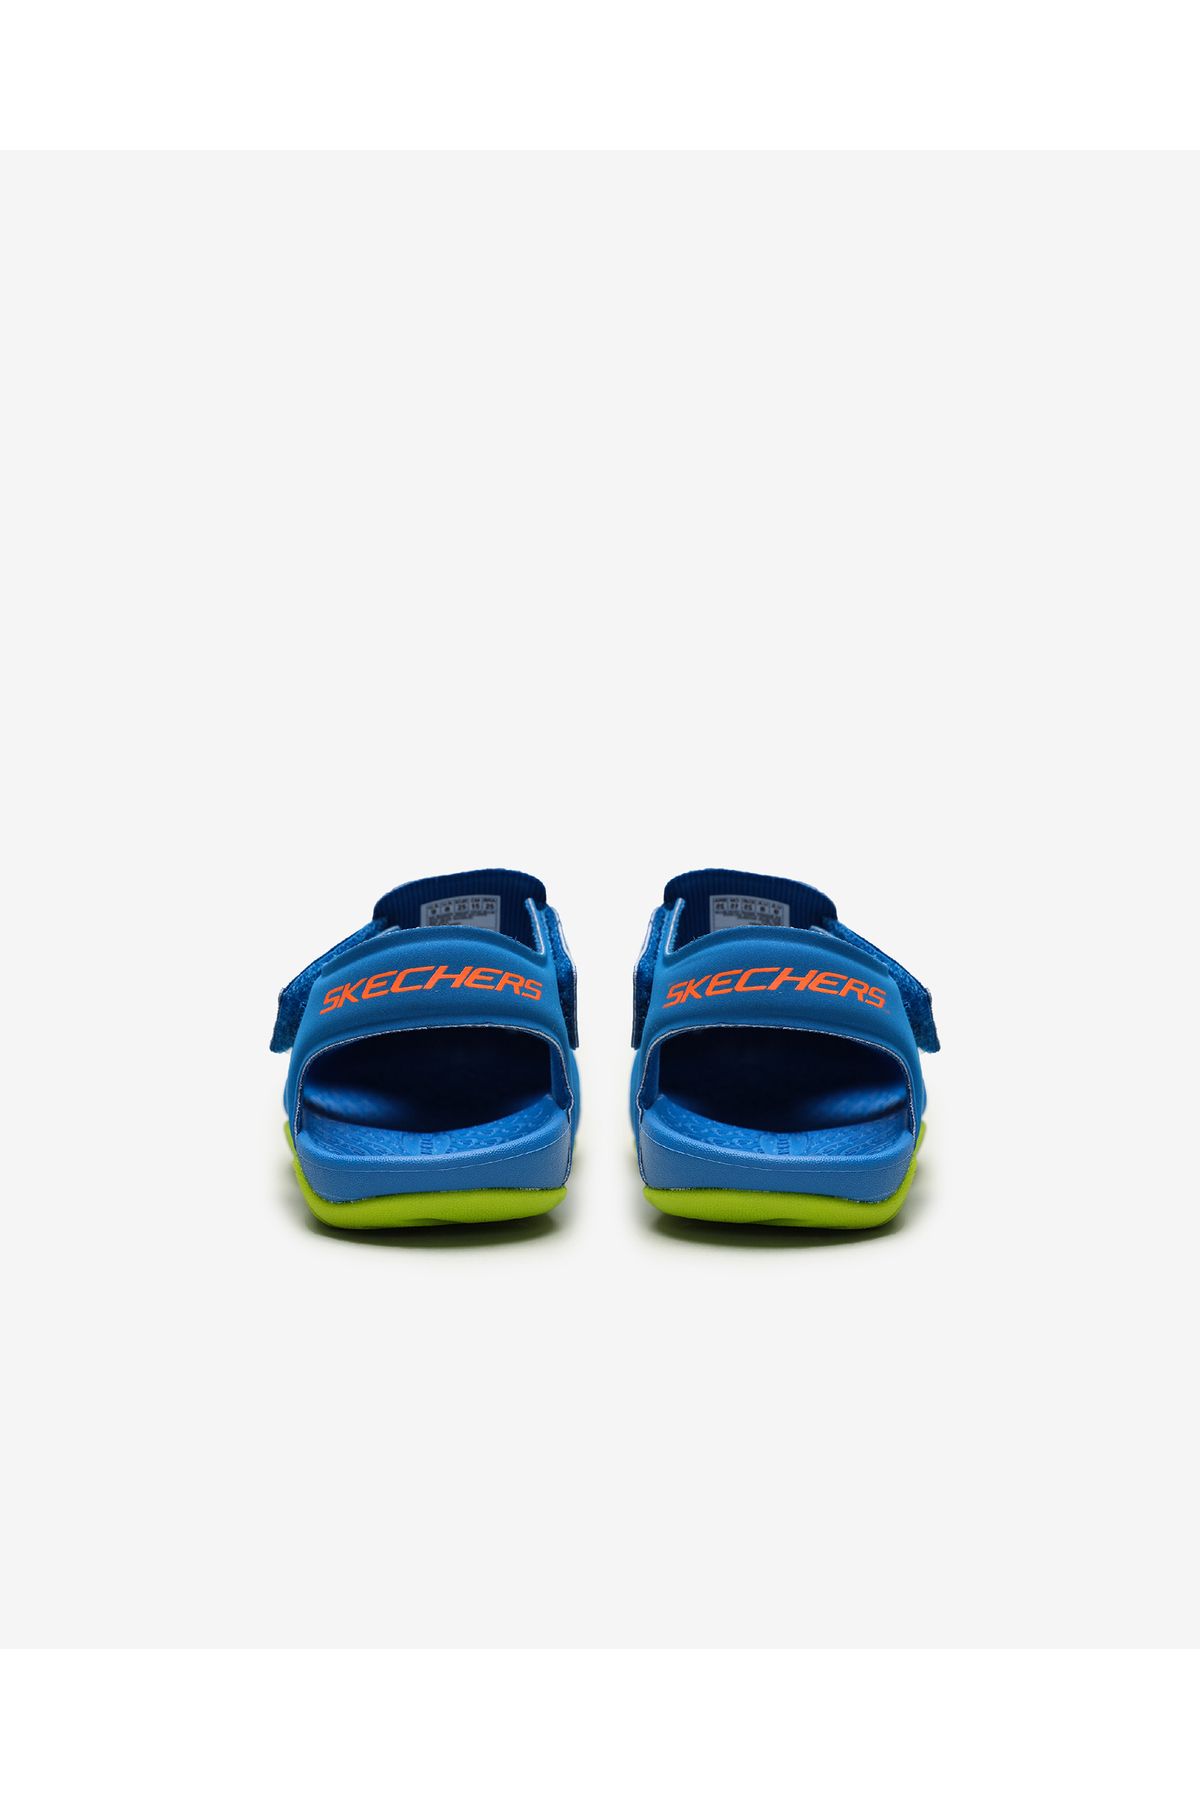 Skechers Side Wave Boy Sandals Blue 92330n bllm